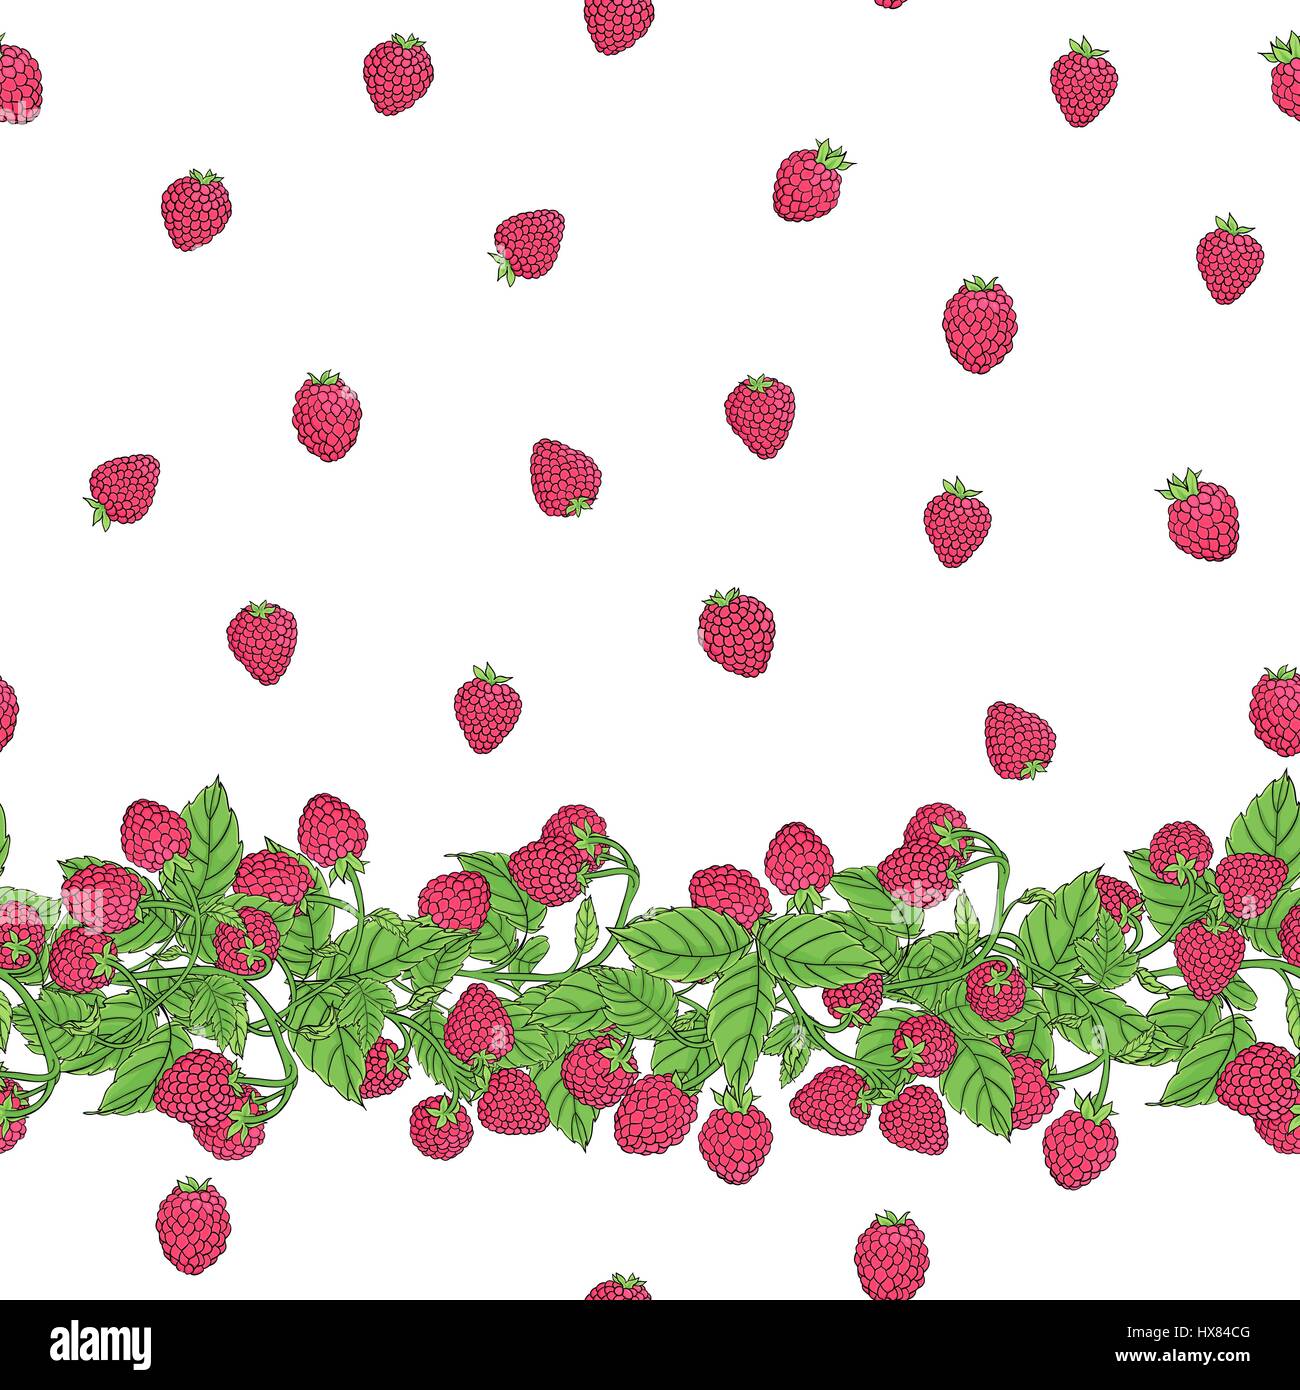 Vettore di Seamless pattern con confine naturale dei rami con lampone maturo di bacche e frutti di bosco disposti in uno stile libero su uno sfondo bianco. Illustrazione Vettoriale